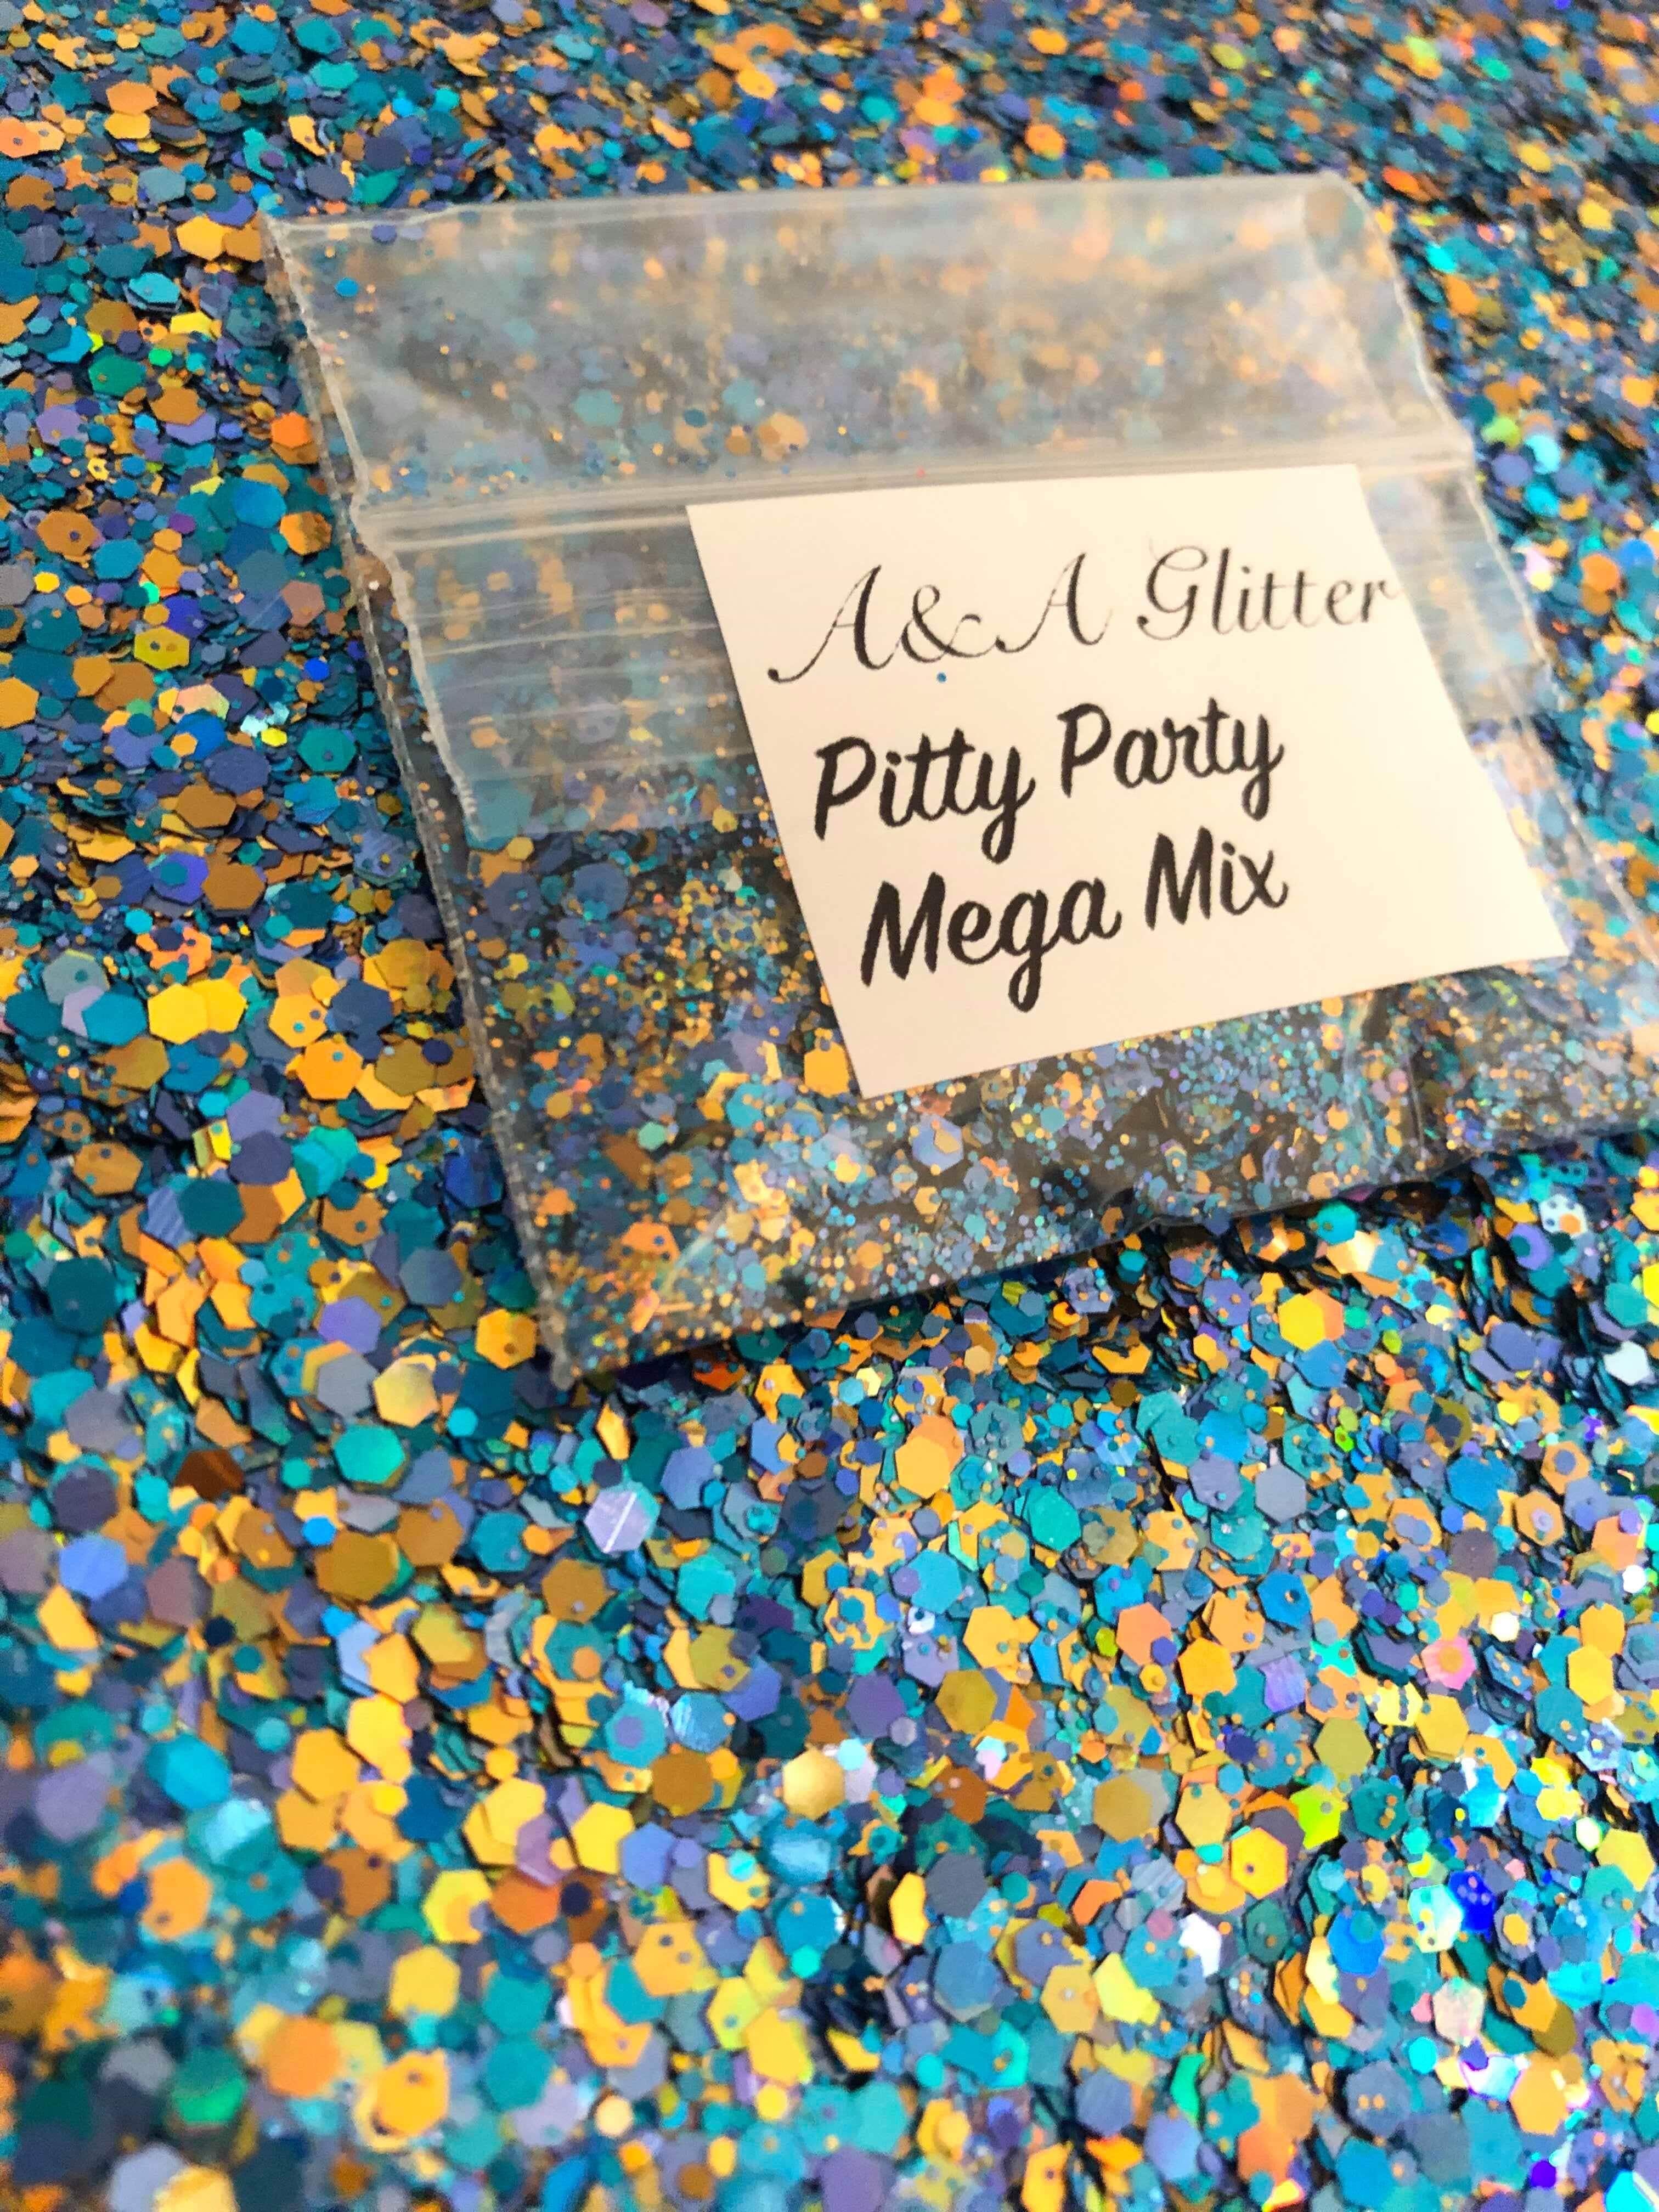 Pitty Party Mega Mix - A&A Glitter